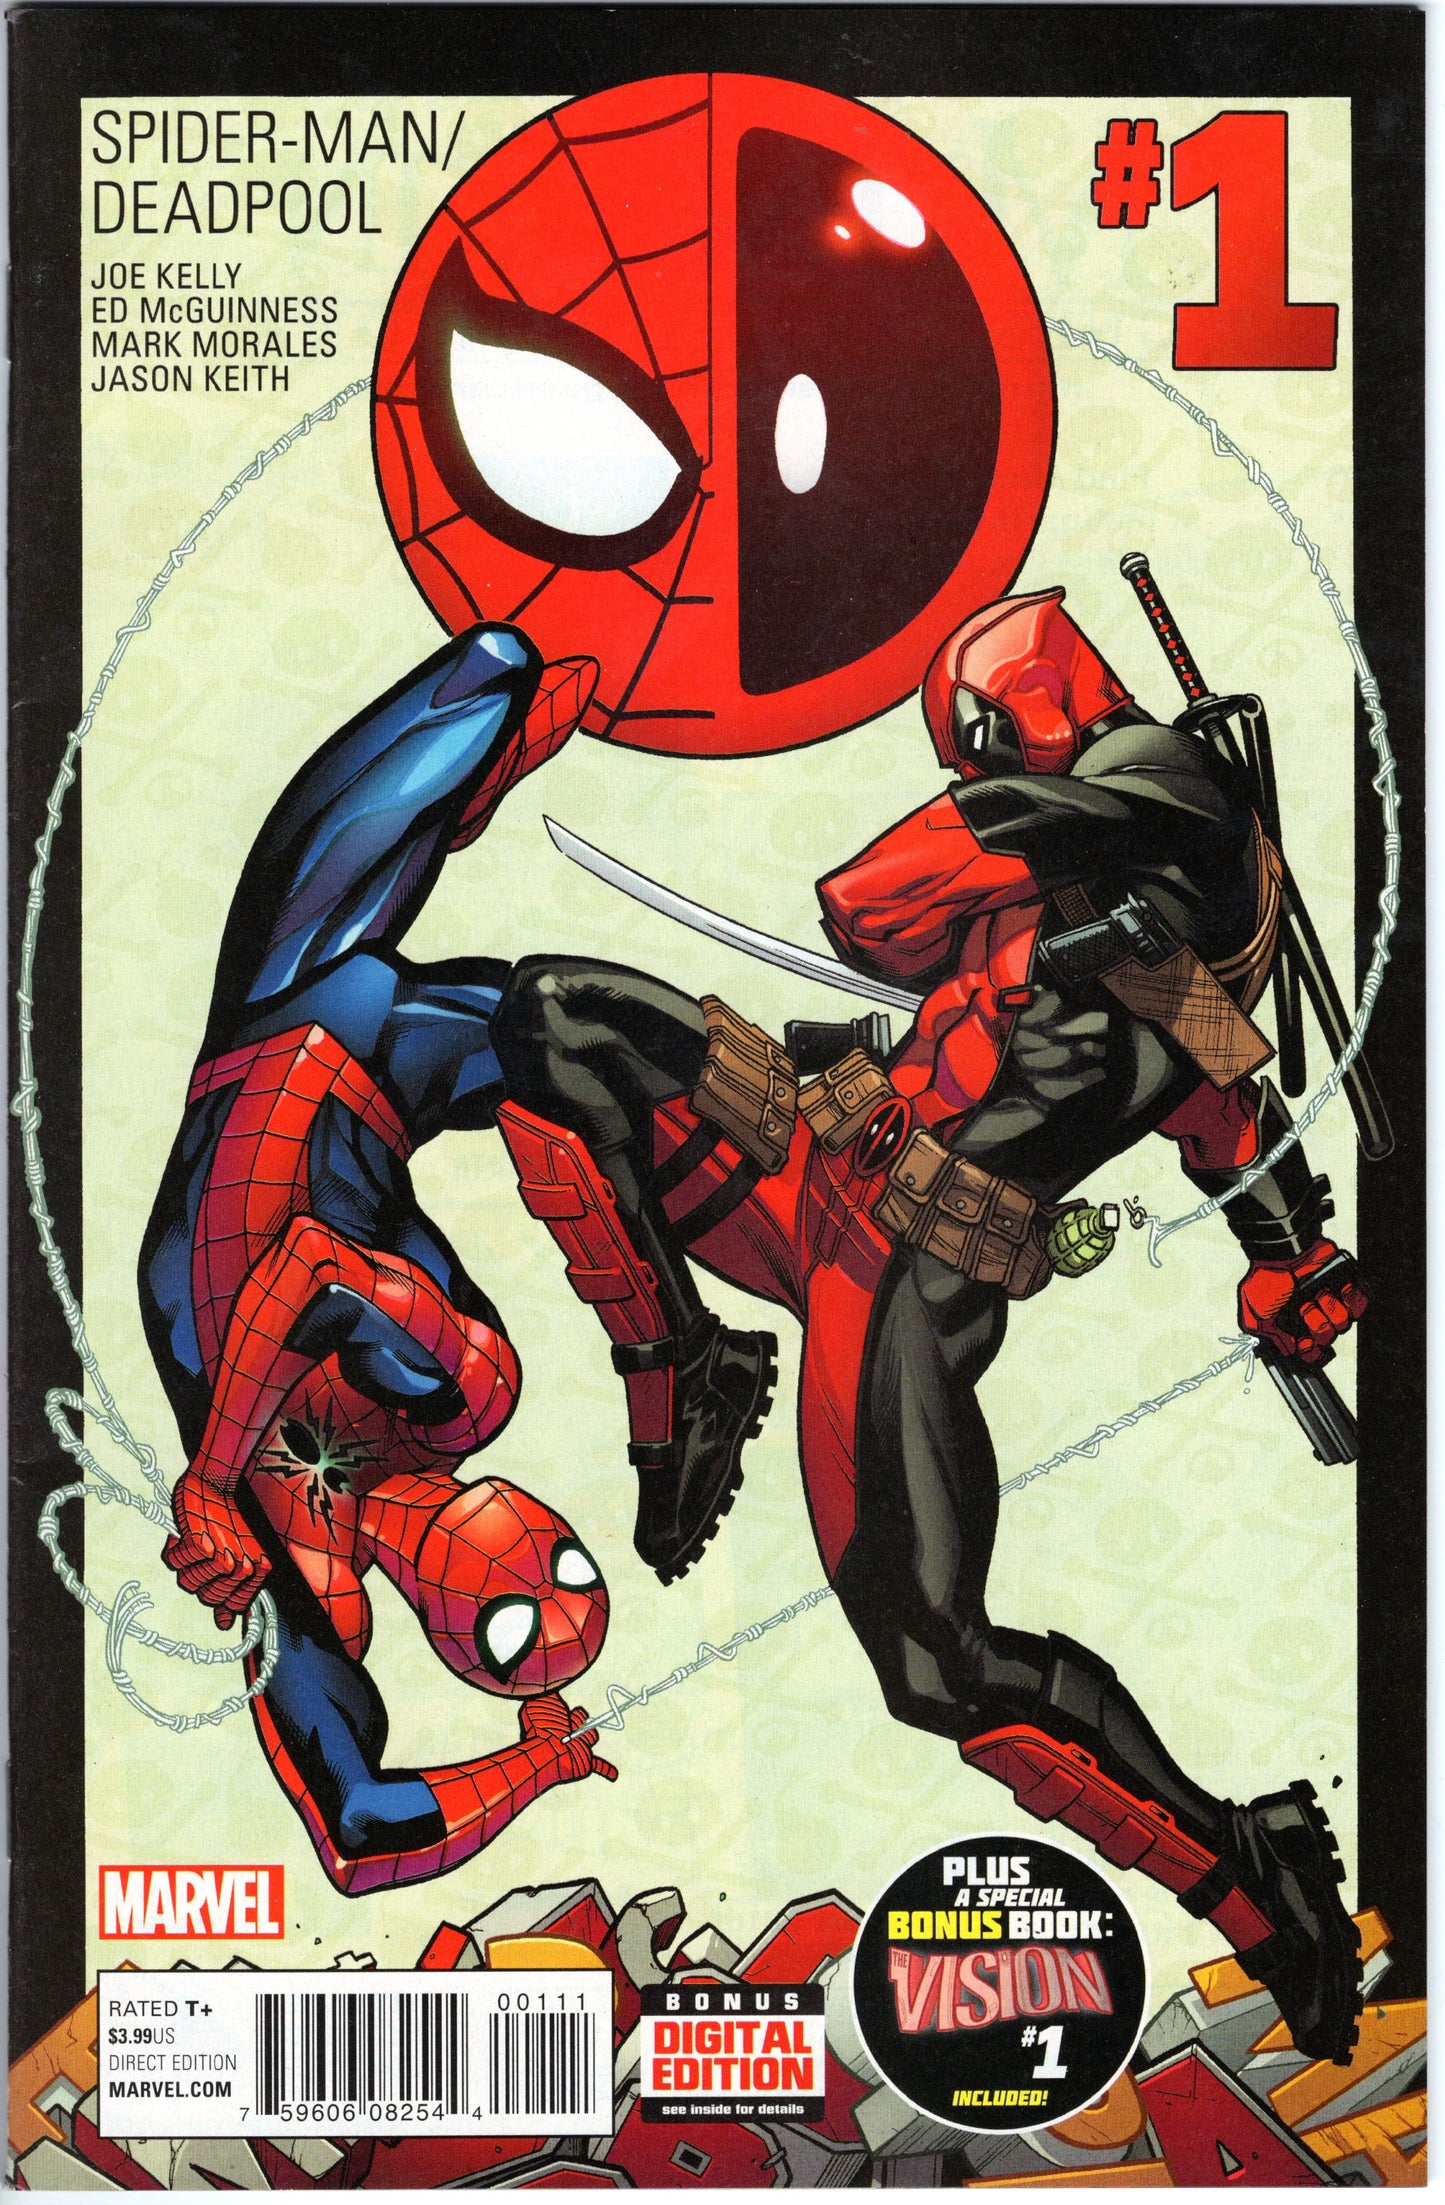 Spider-Man / Deadpool - Issue #1 (June, 2016 - Marvel Comics) VF+